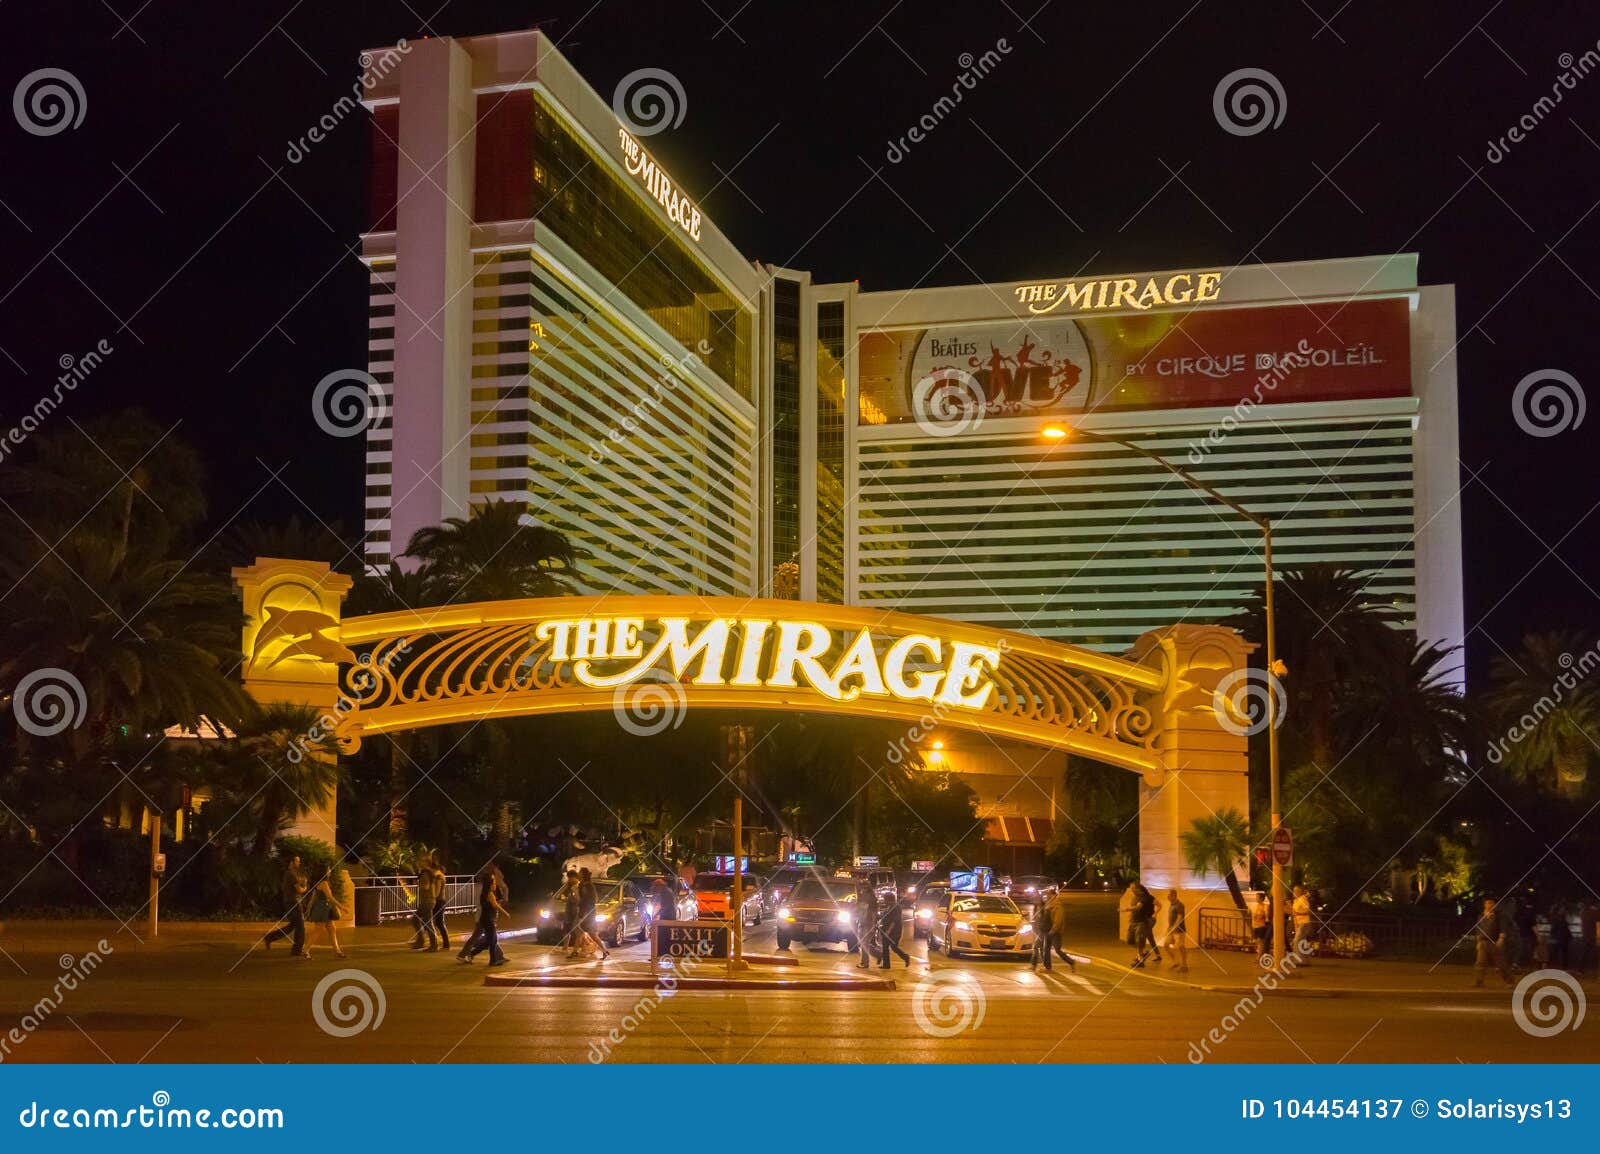 Las Vegas United States Casinos